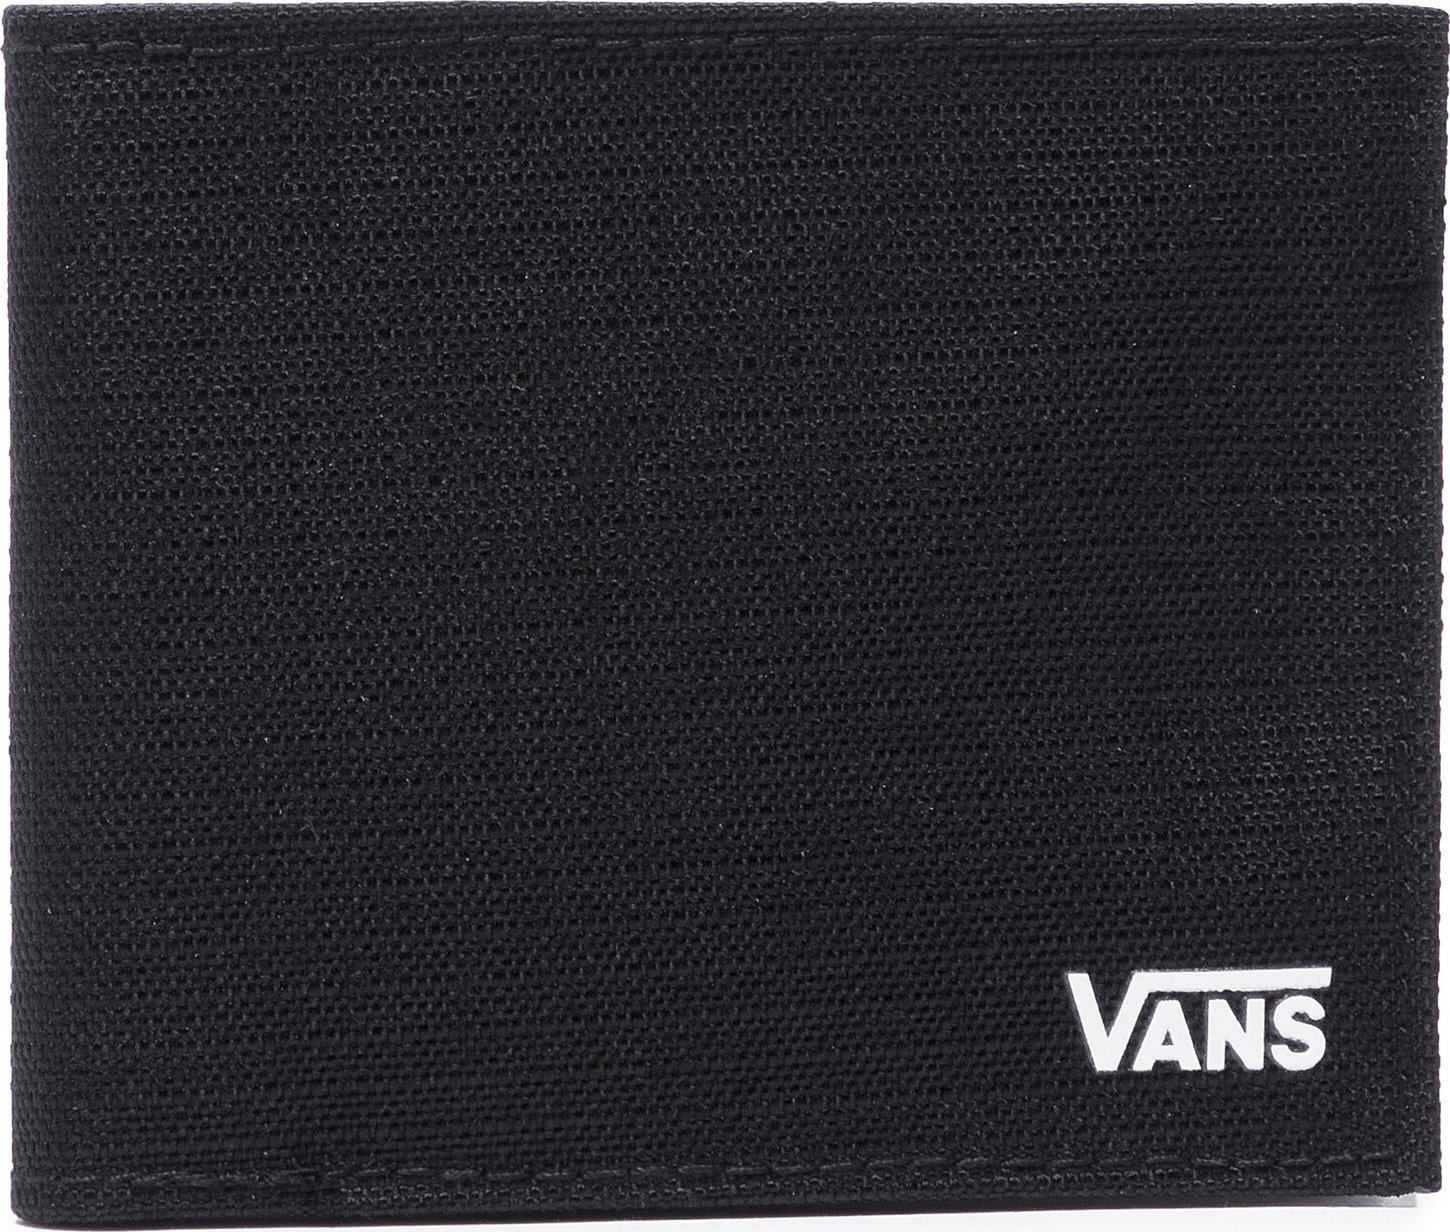 Velká pánská peněženka Vans Ultra Thin VN0A4TPDY281 Black/White